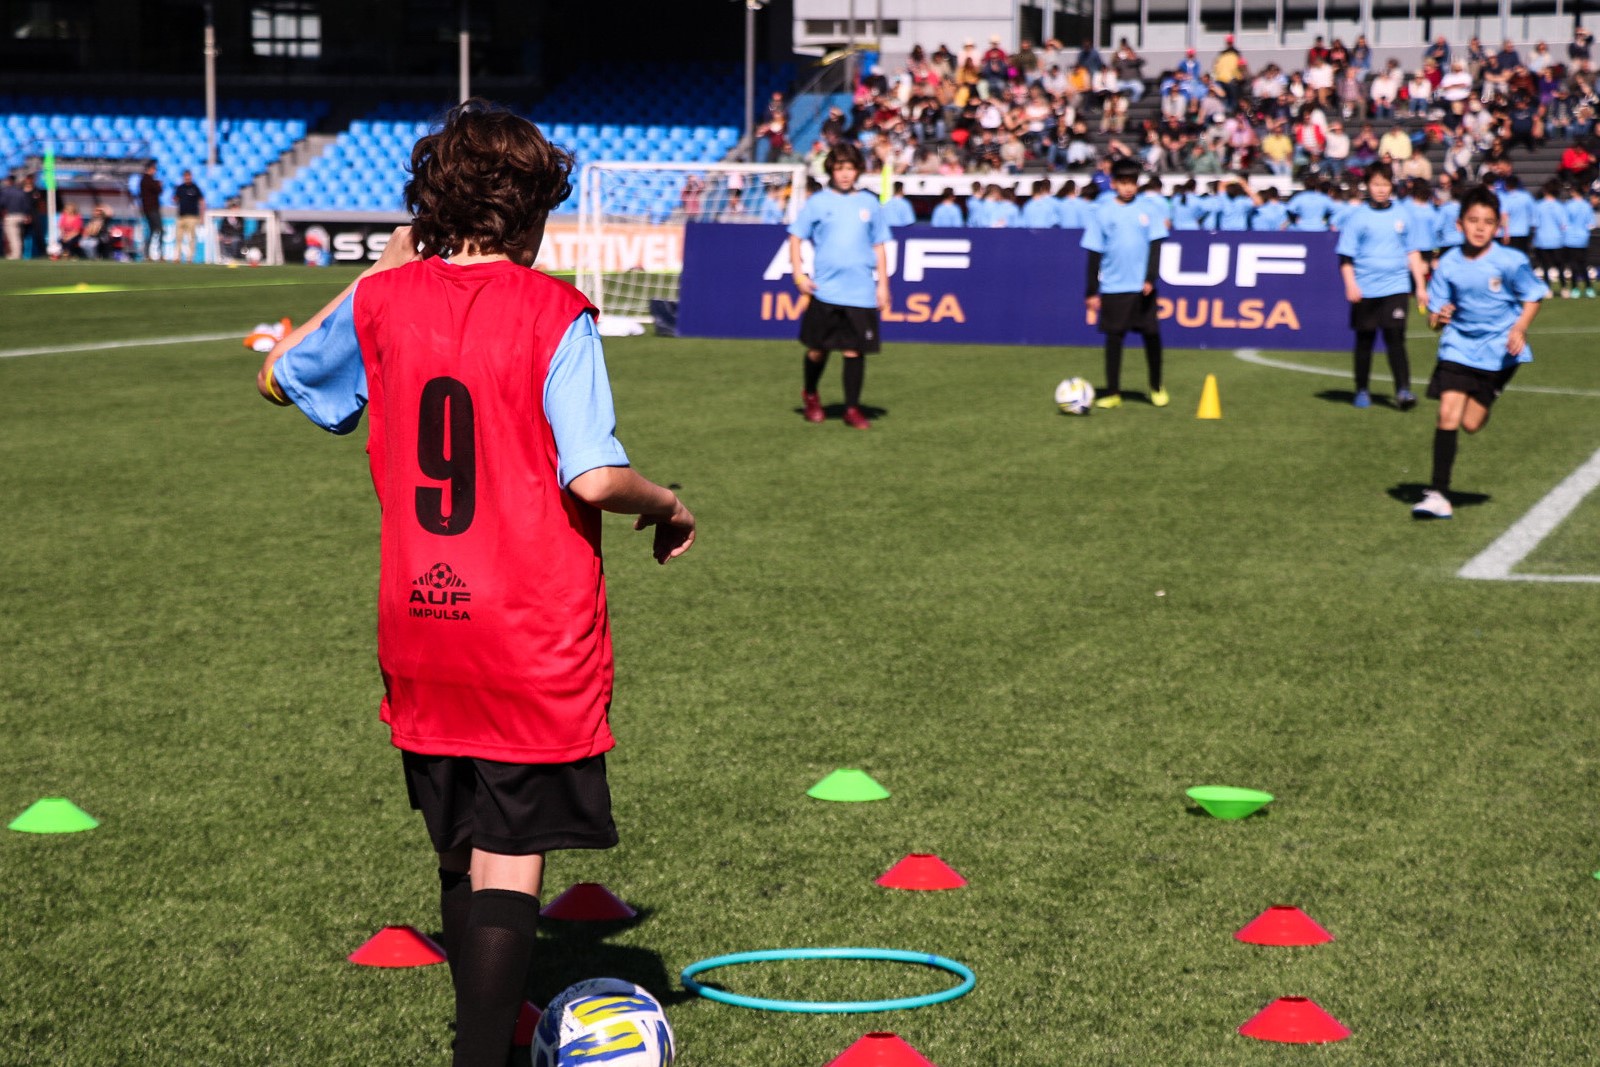 Se viene un nuevo torneo de fútbol sala infantil apoyado por AUF